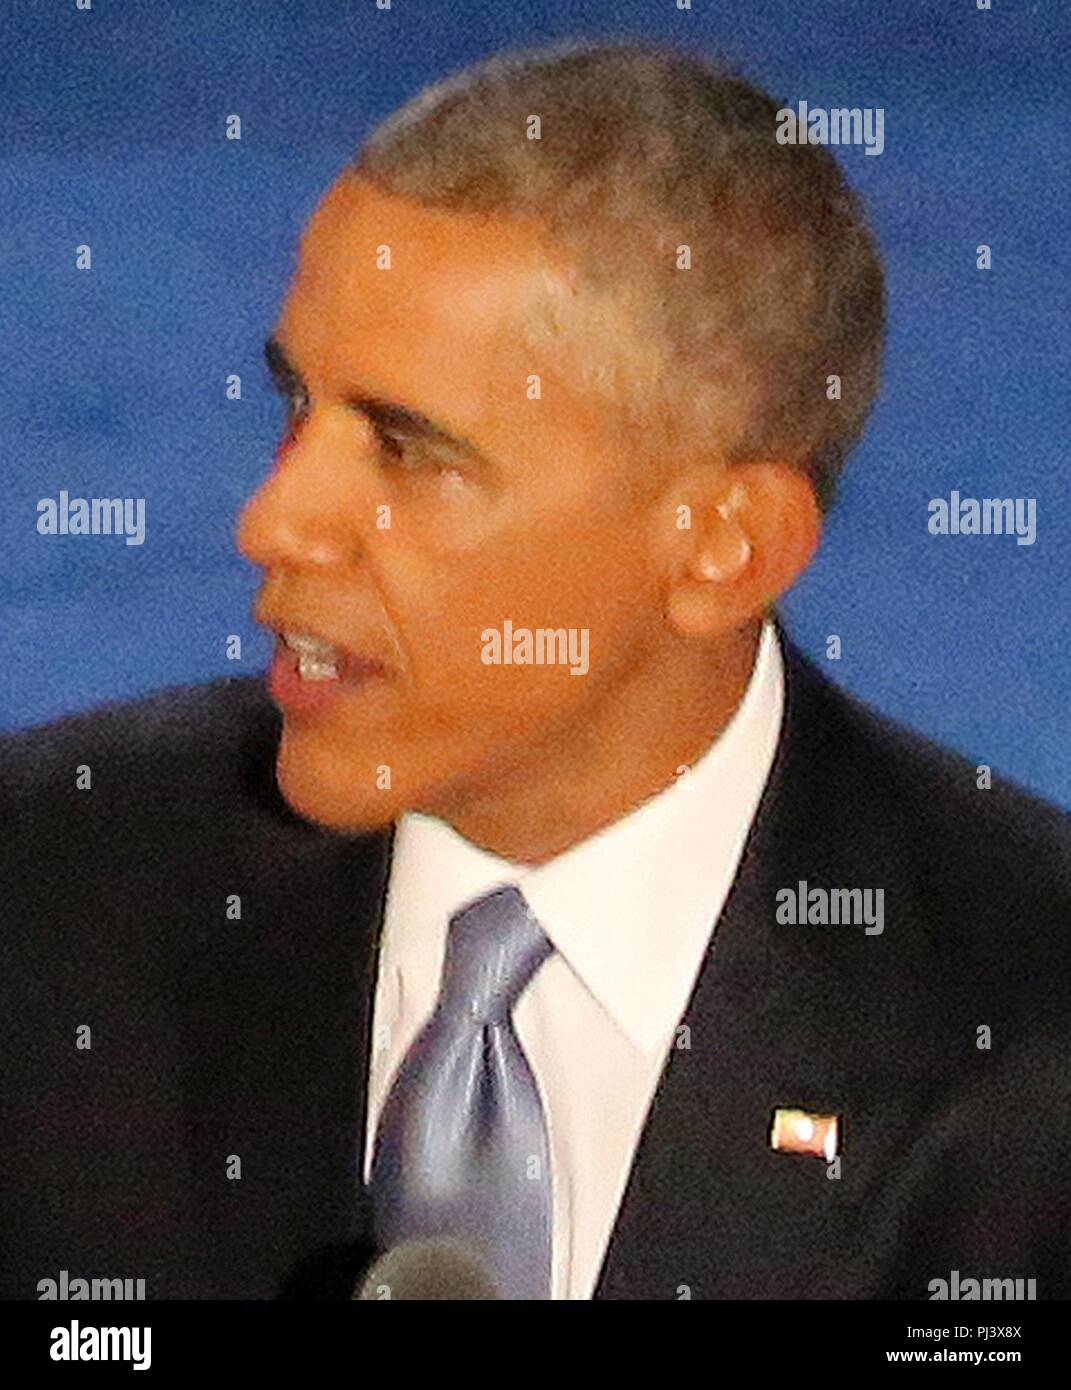 Barack Obama DNC July 2016 (cropped). Stock Photo